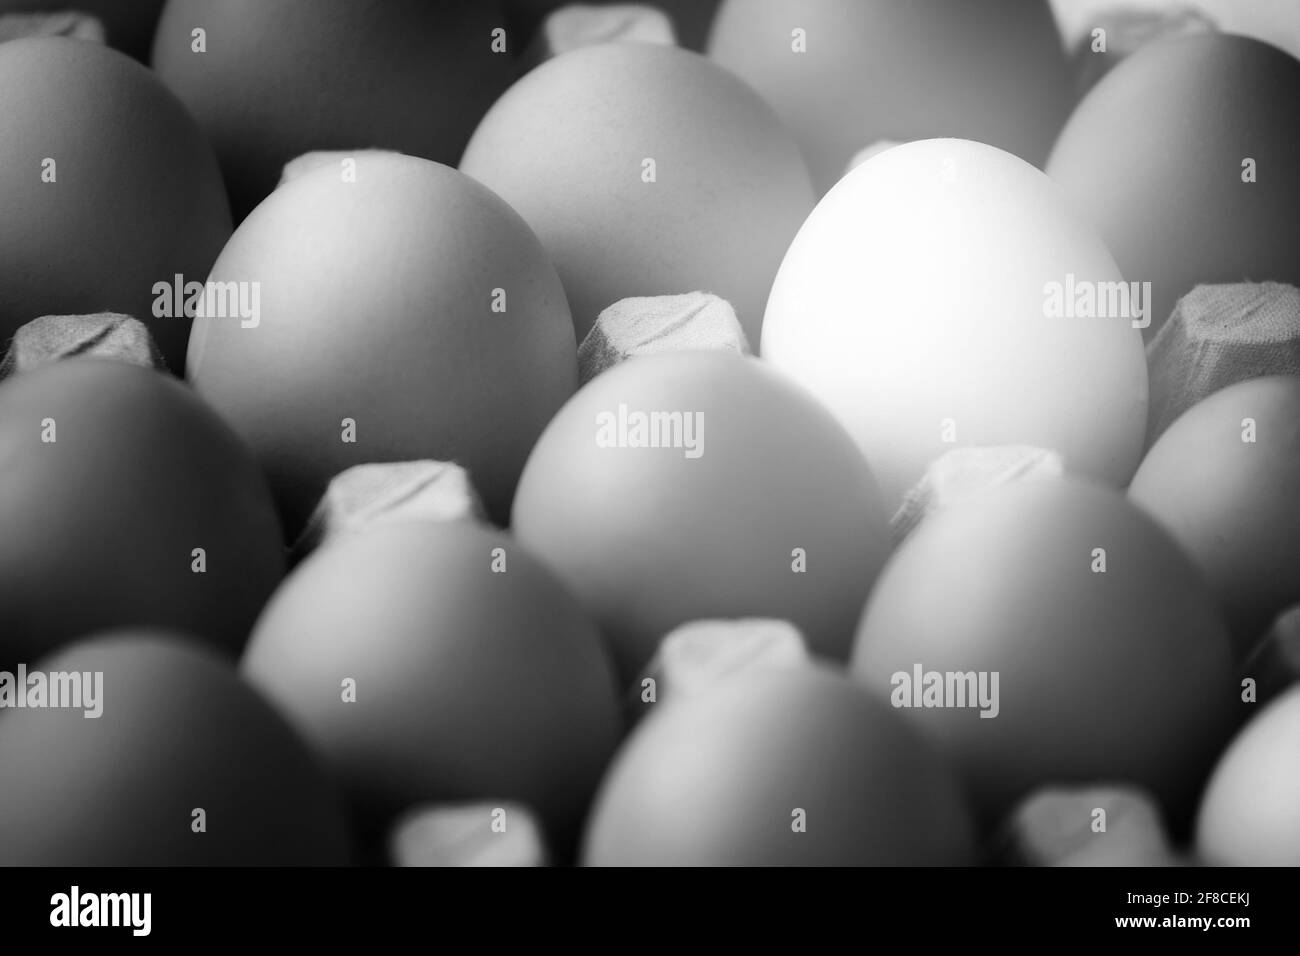 Monochromes Foto von Hühnereiern in einer Pappschachtel in Nahaufnahme. Ein weißes Ei unter vielen grauen Eiern. Ein einzigartiges Objekt, das nicht den anderen gleicht. Stockfoto